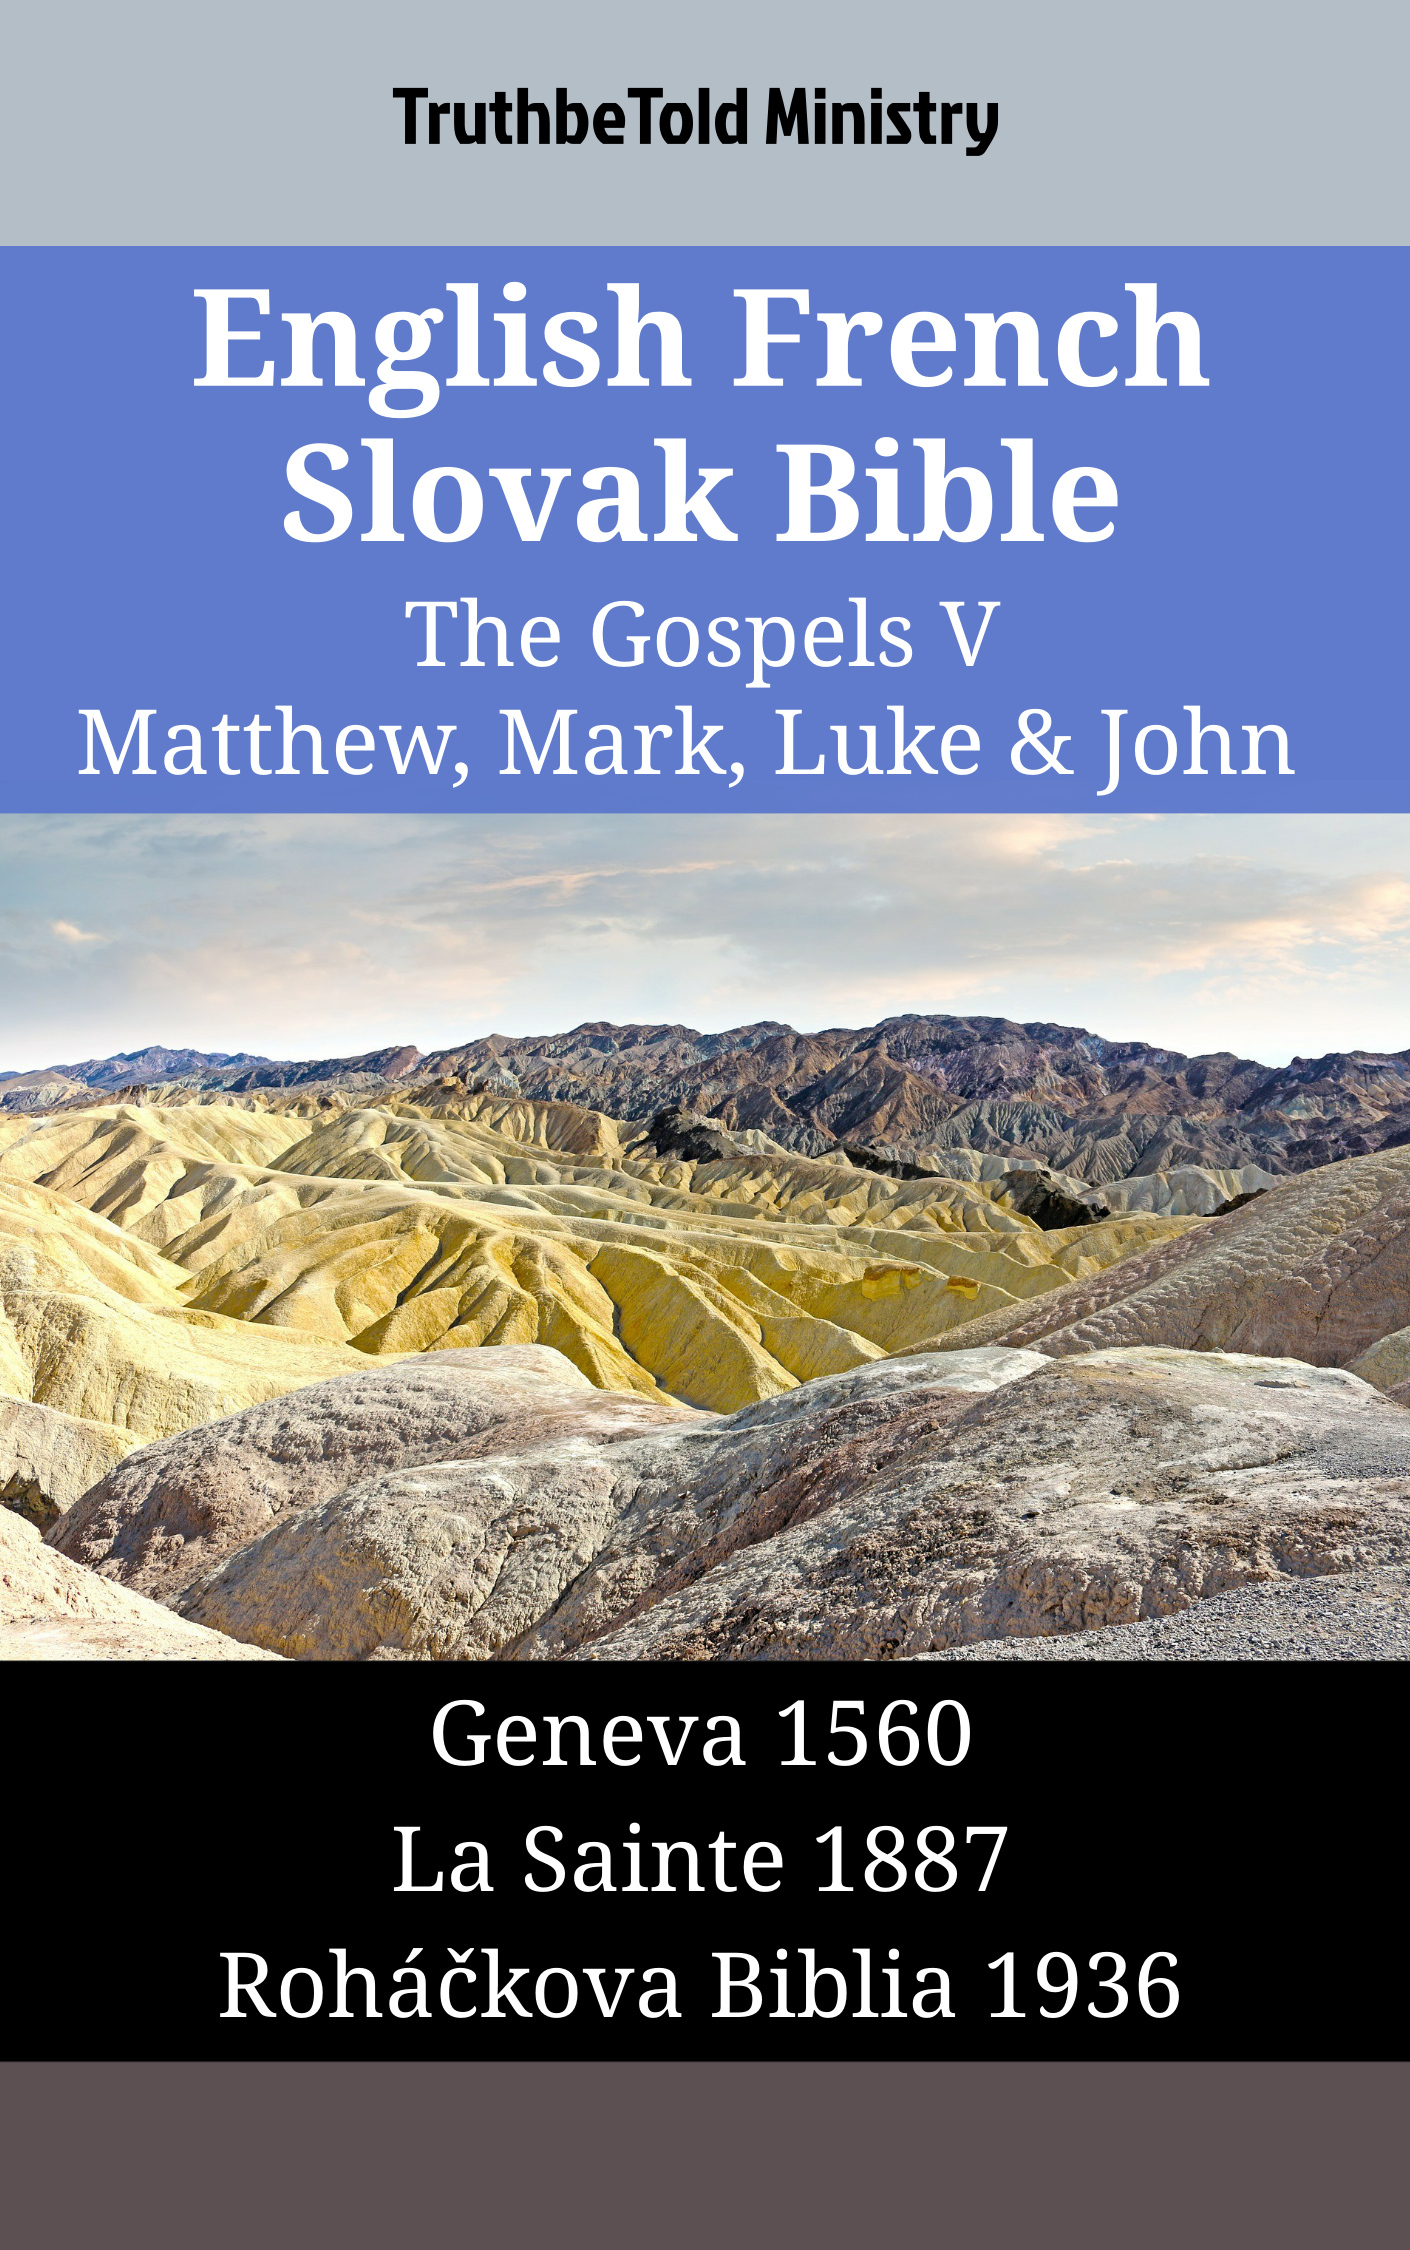 English French Slovak Bible - The Gospels V - Matthew, Mark, Luke & John